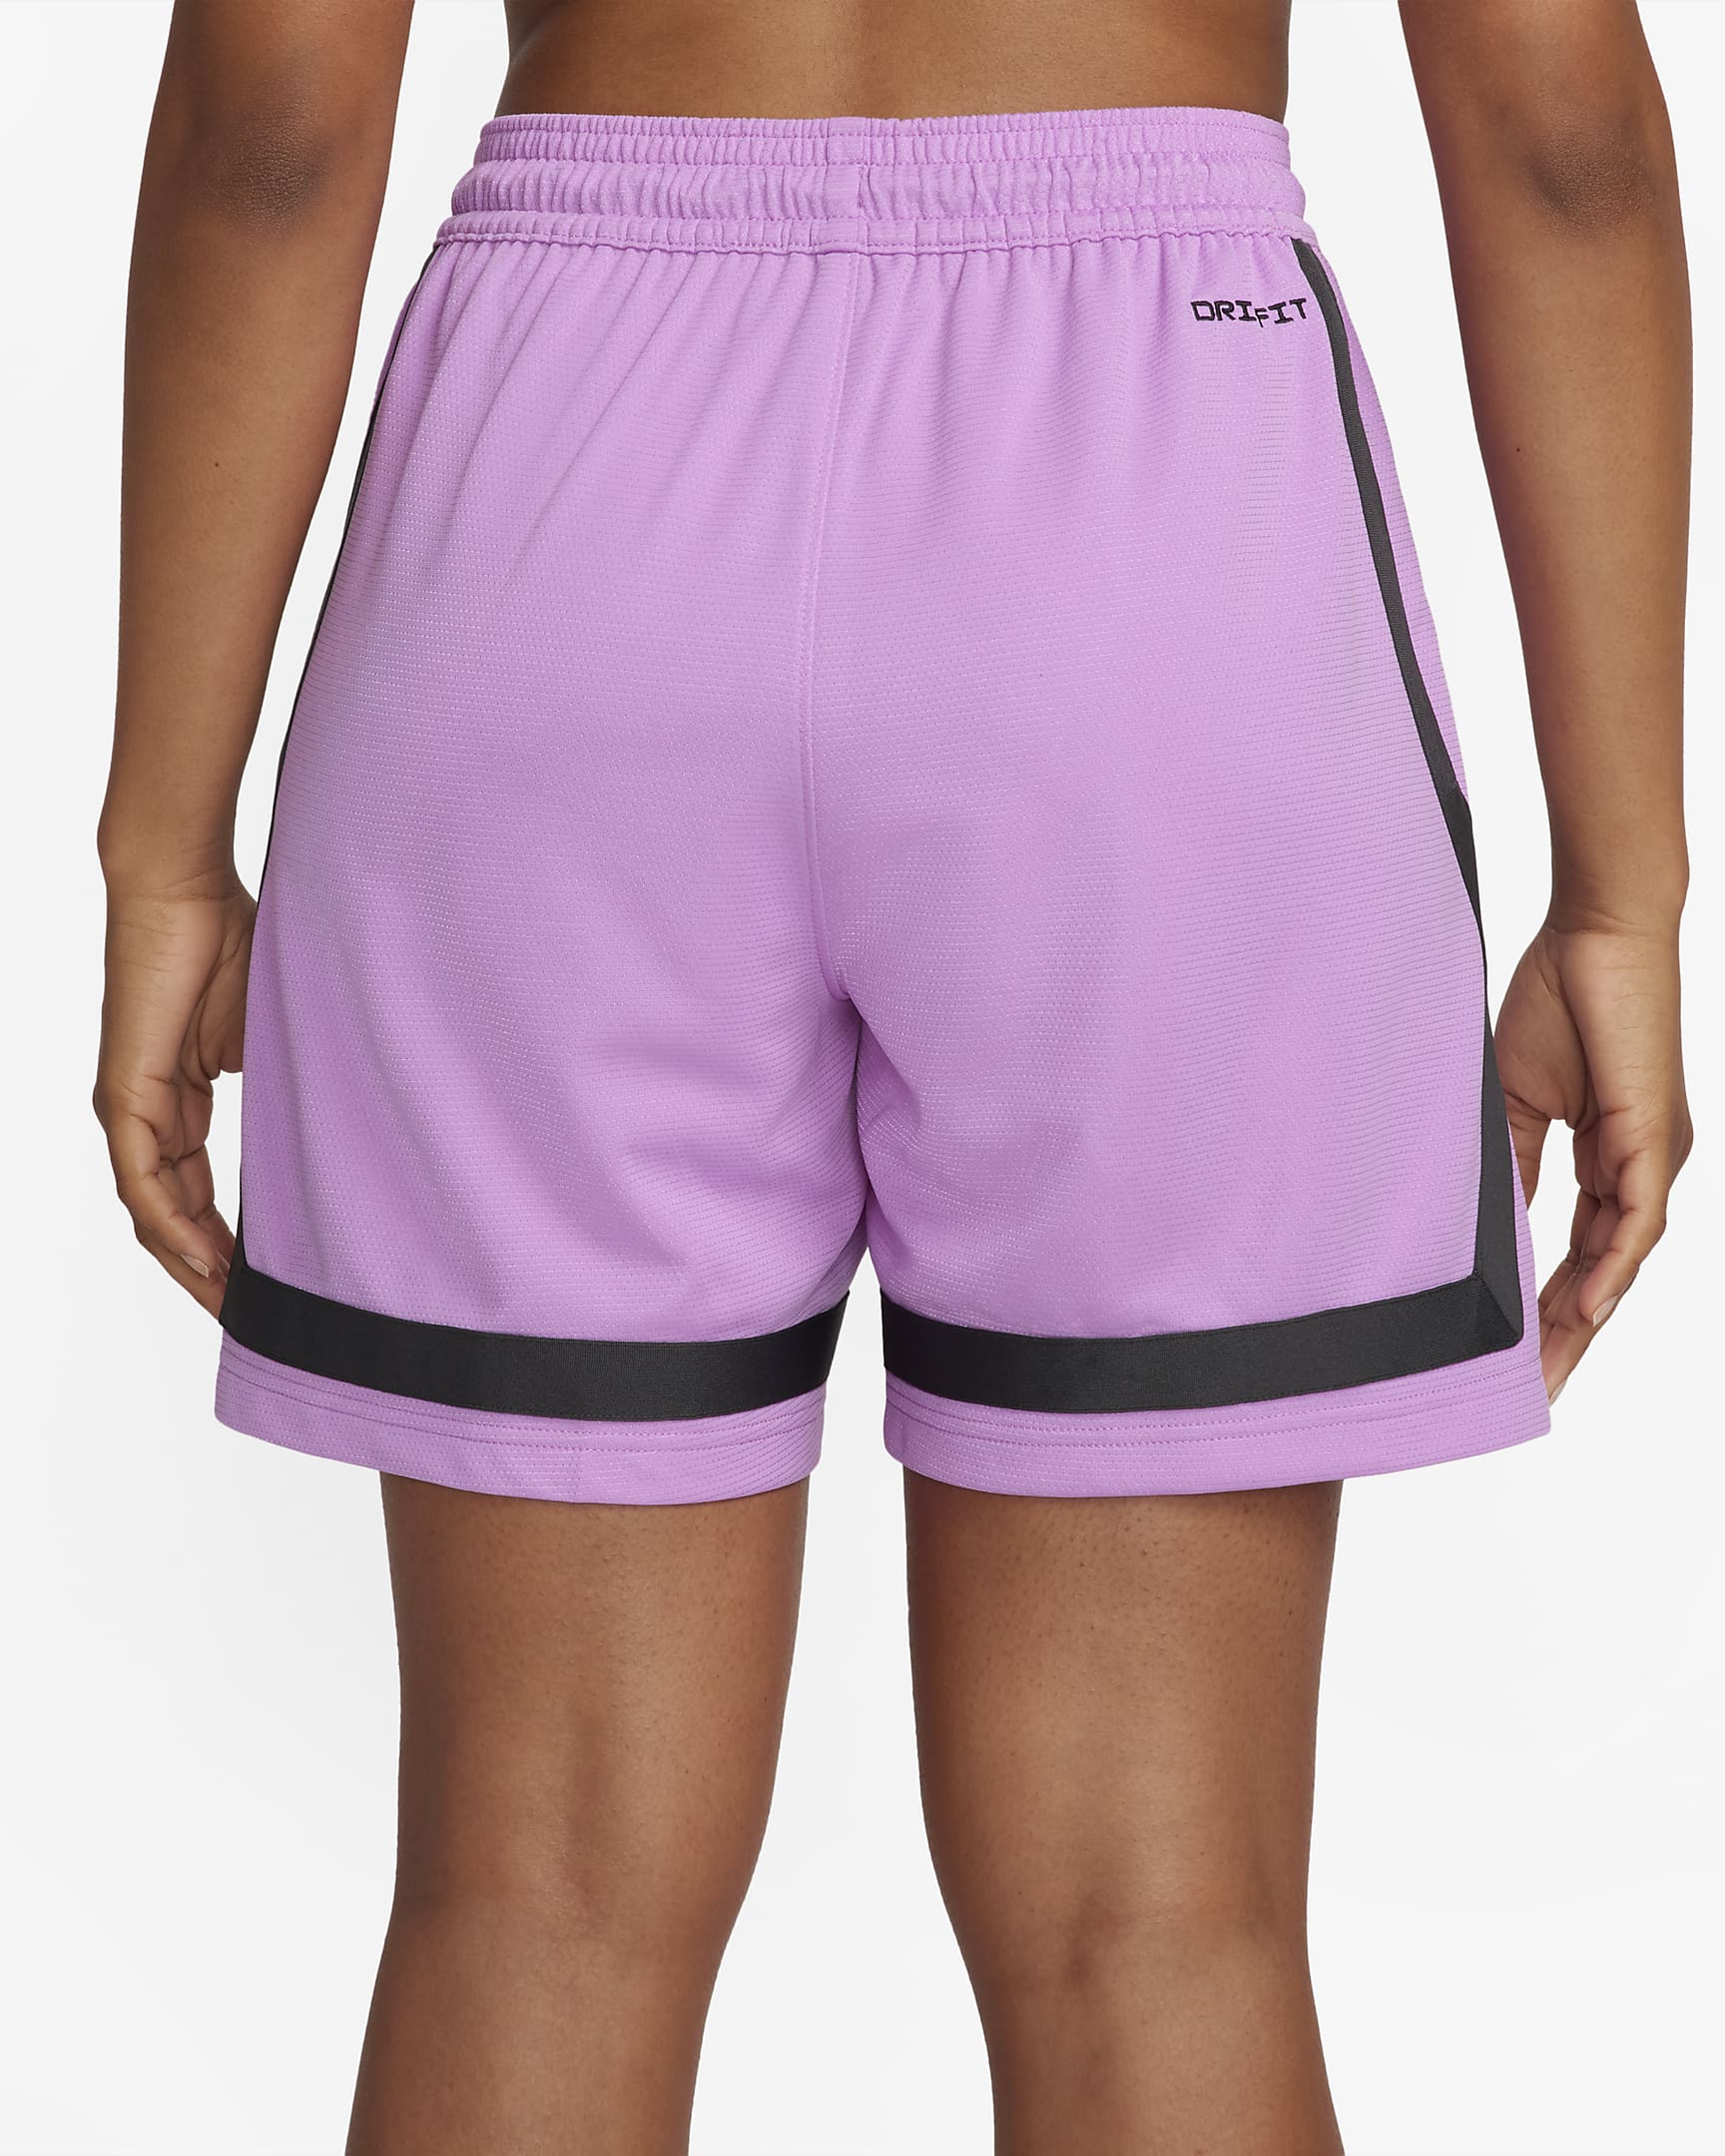 Sabrina Dri-FIT Basketball Shorts. Nike BG